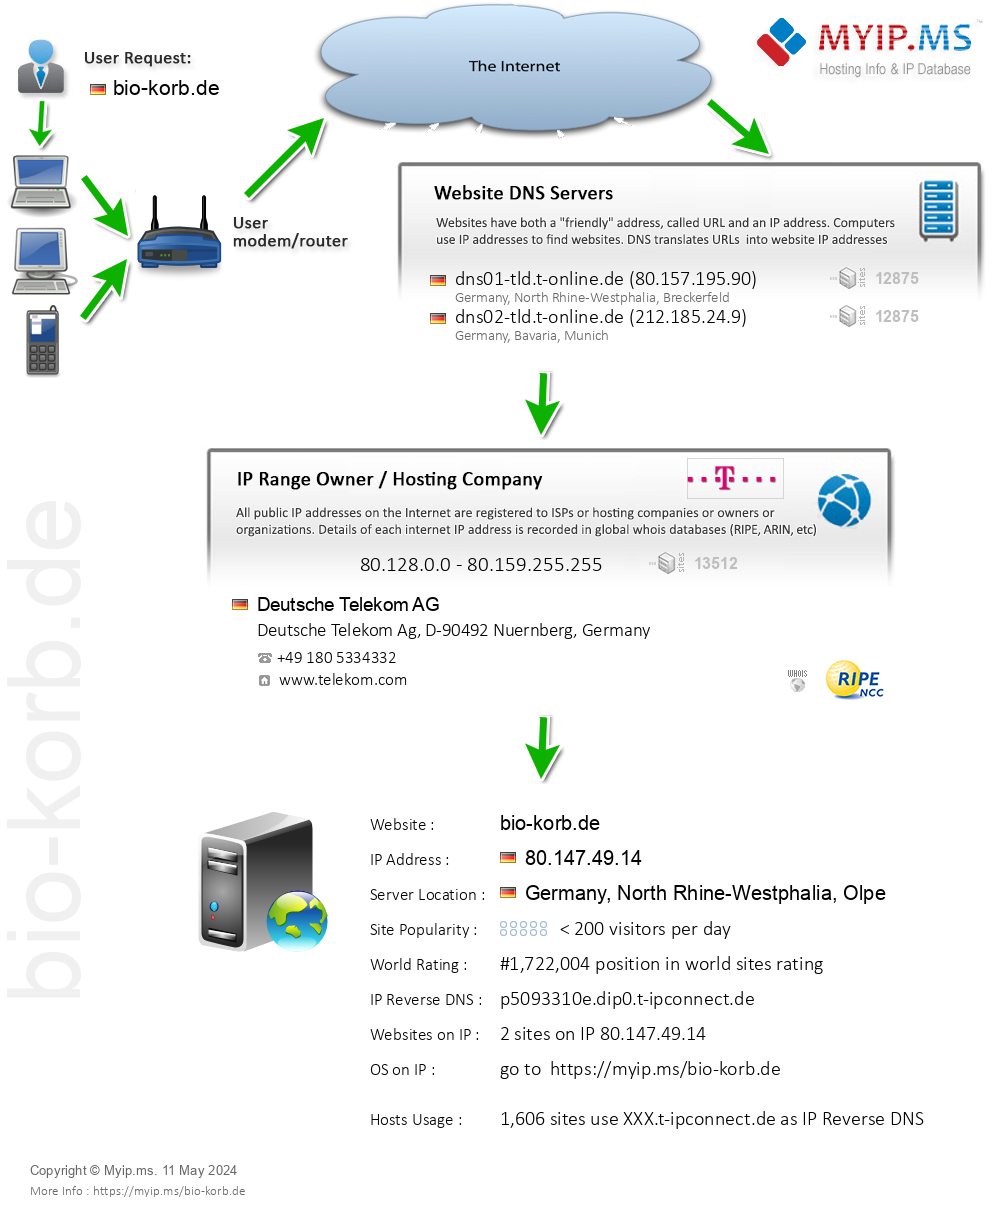 Bio-korb.de - Website Hosting Visual IP Diagram